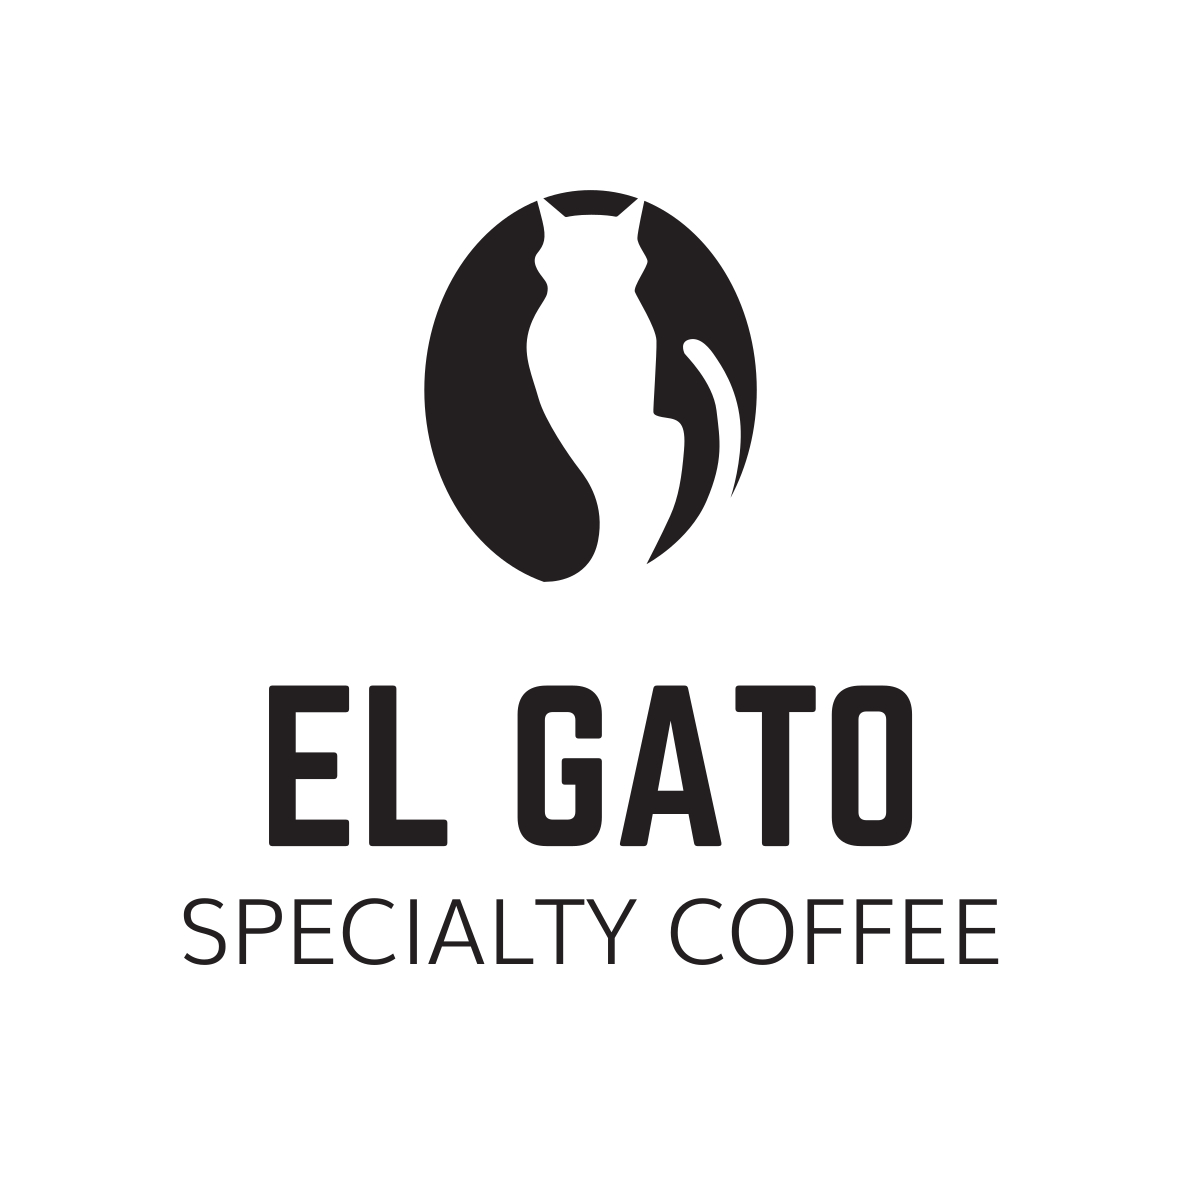 El Gato Specialty Coffee